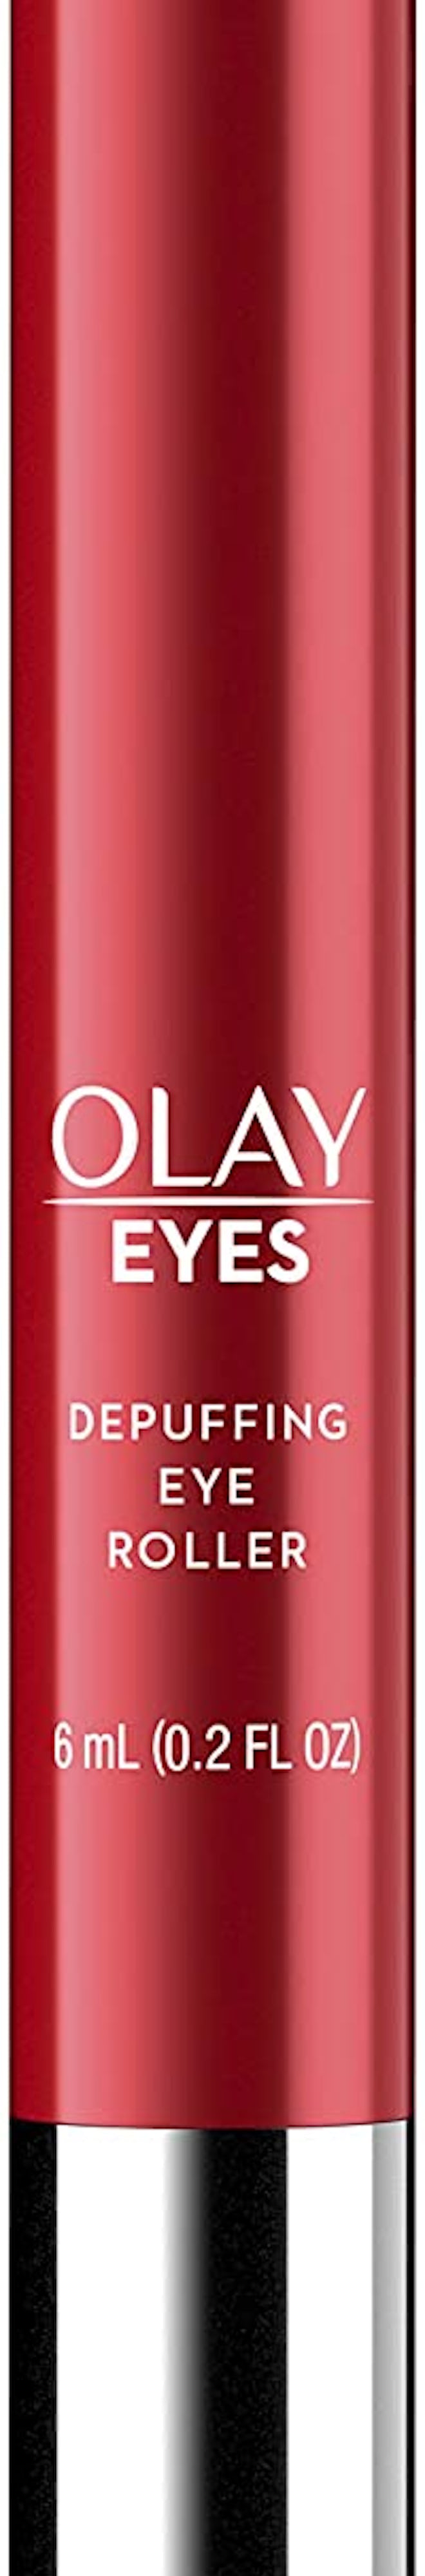 Olay Eye Roller